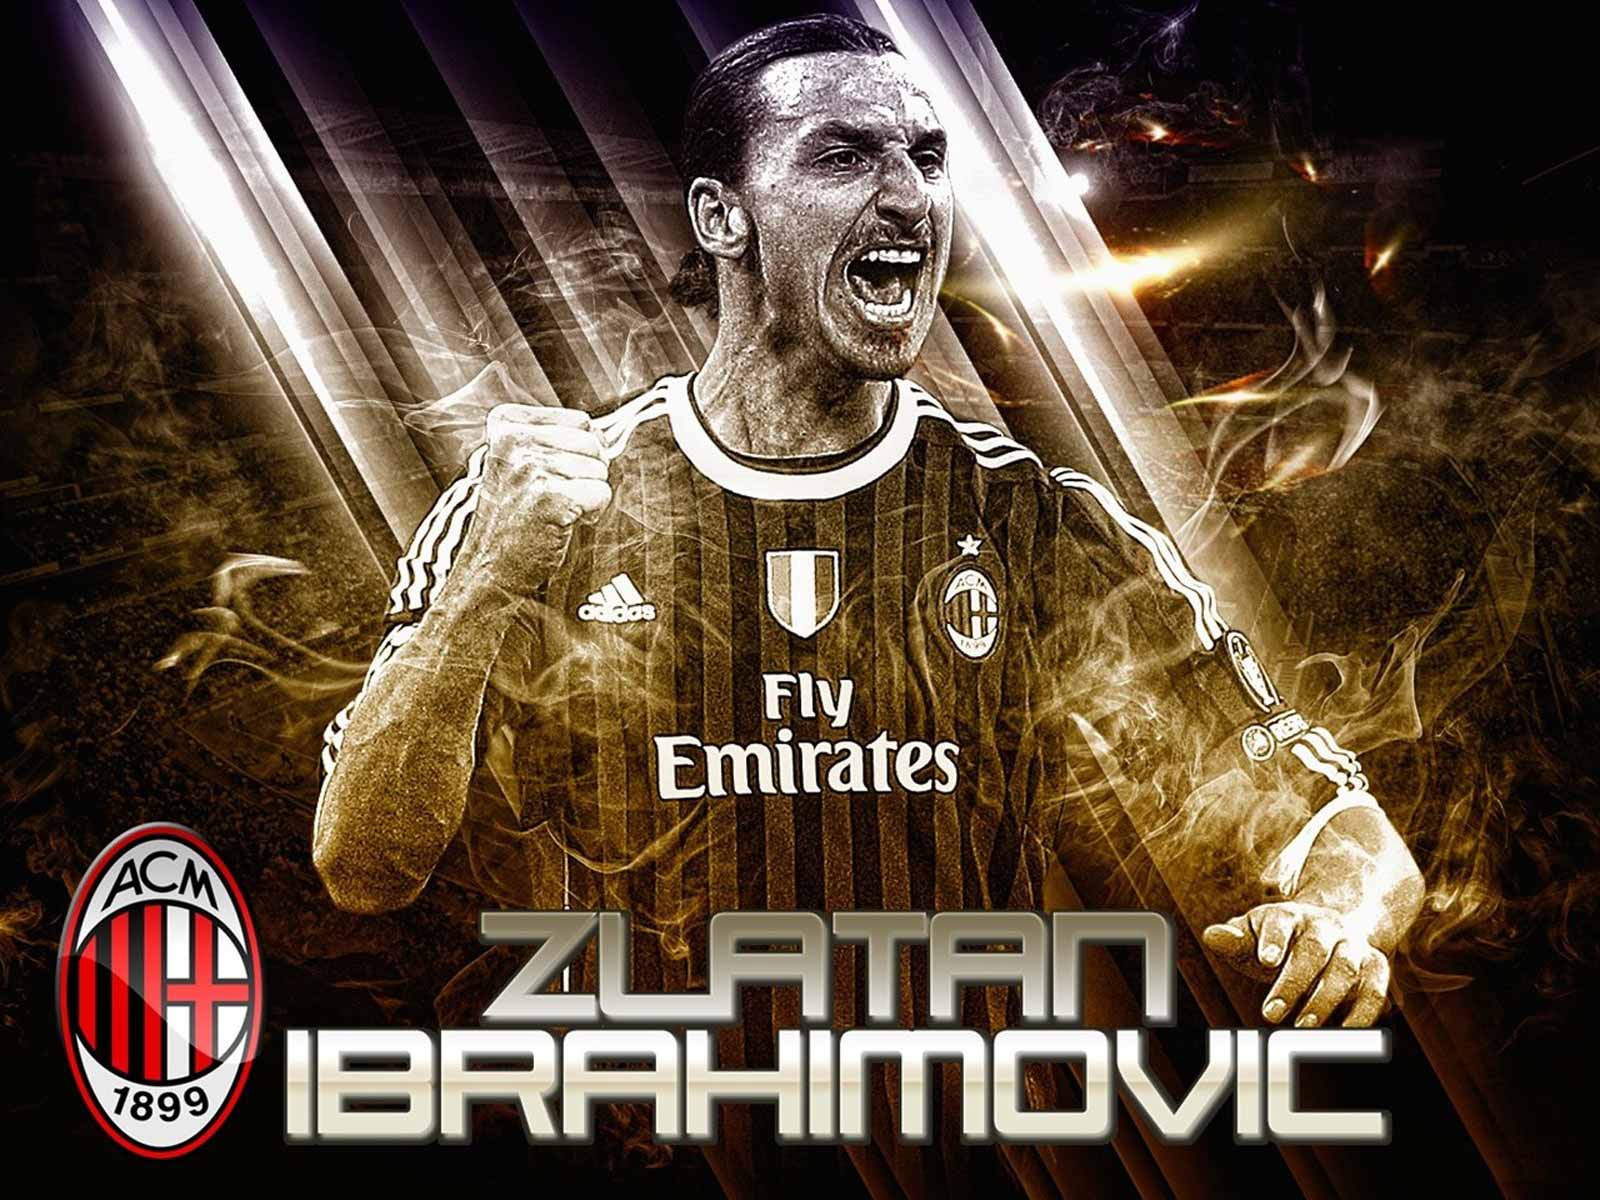 Zlatan Ibrahimovic New HD Wallpapers 2013-2014